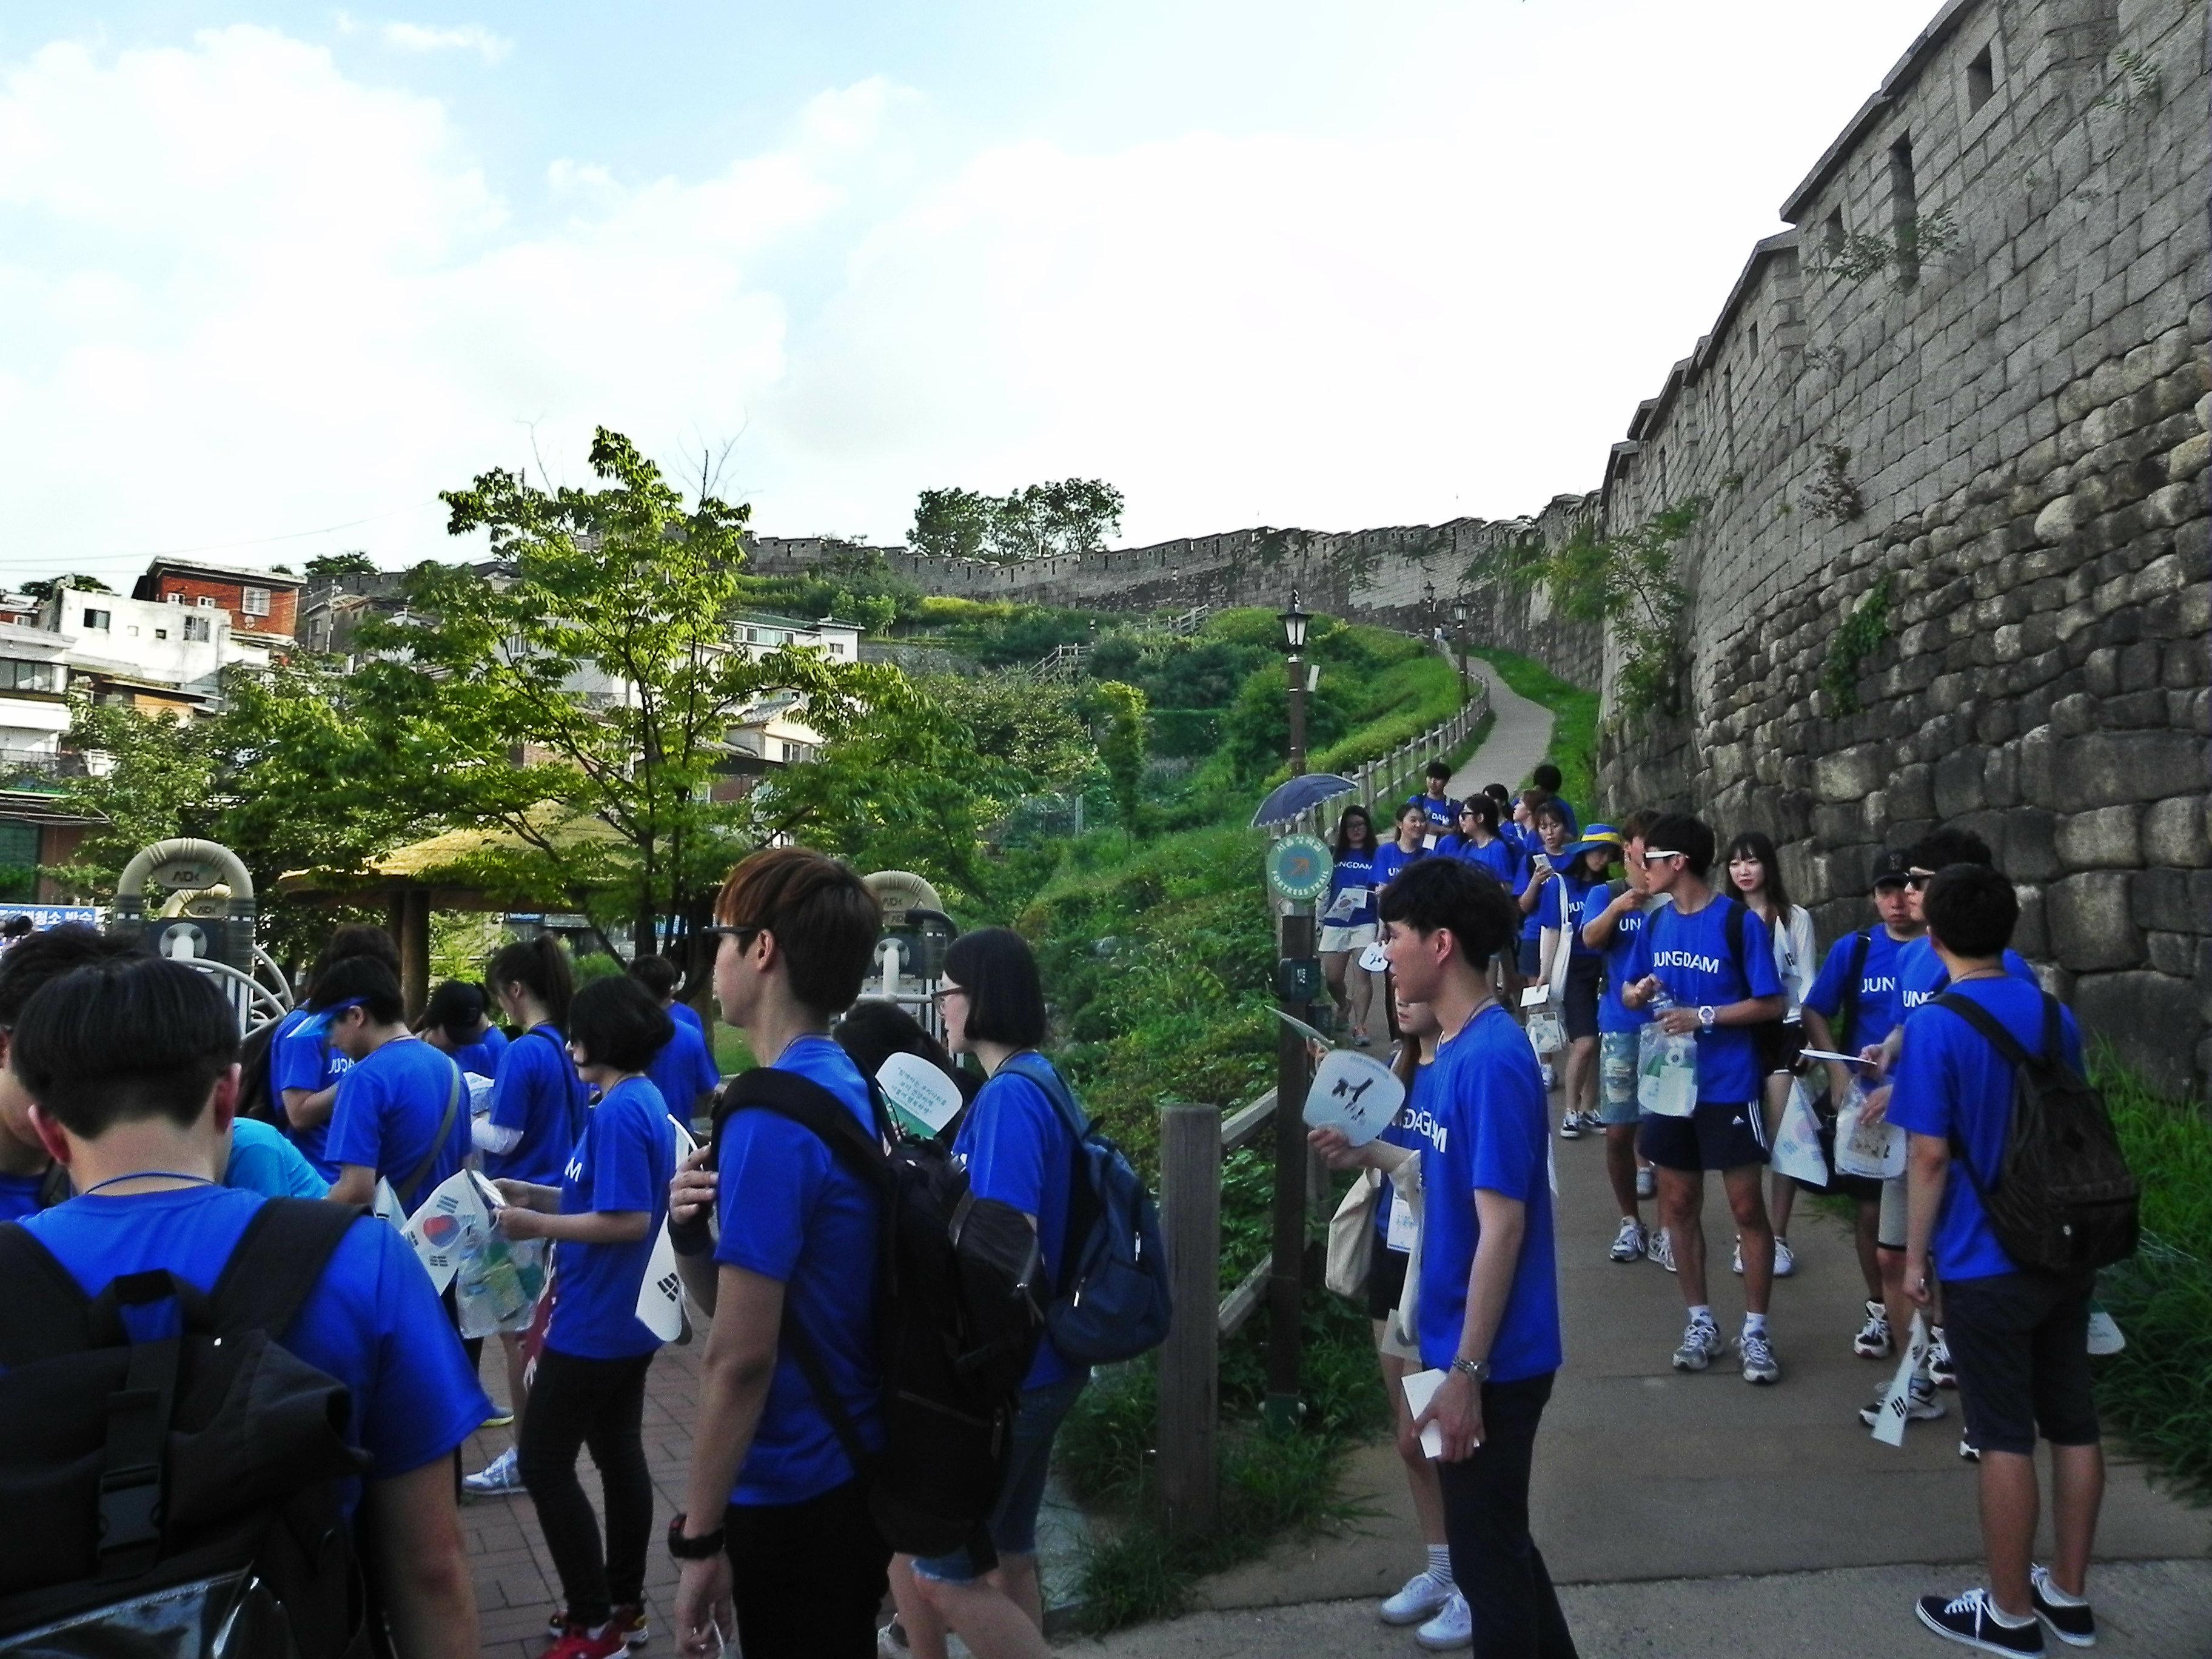 아산장학생은 나눔문화 확산을 위해 8.13일과 14일 한양도성 걷기 행사를 개최했습니다.5